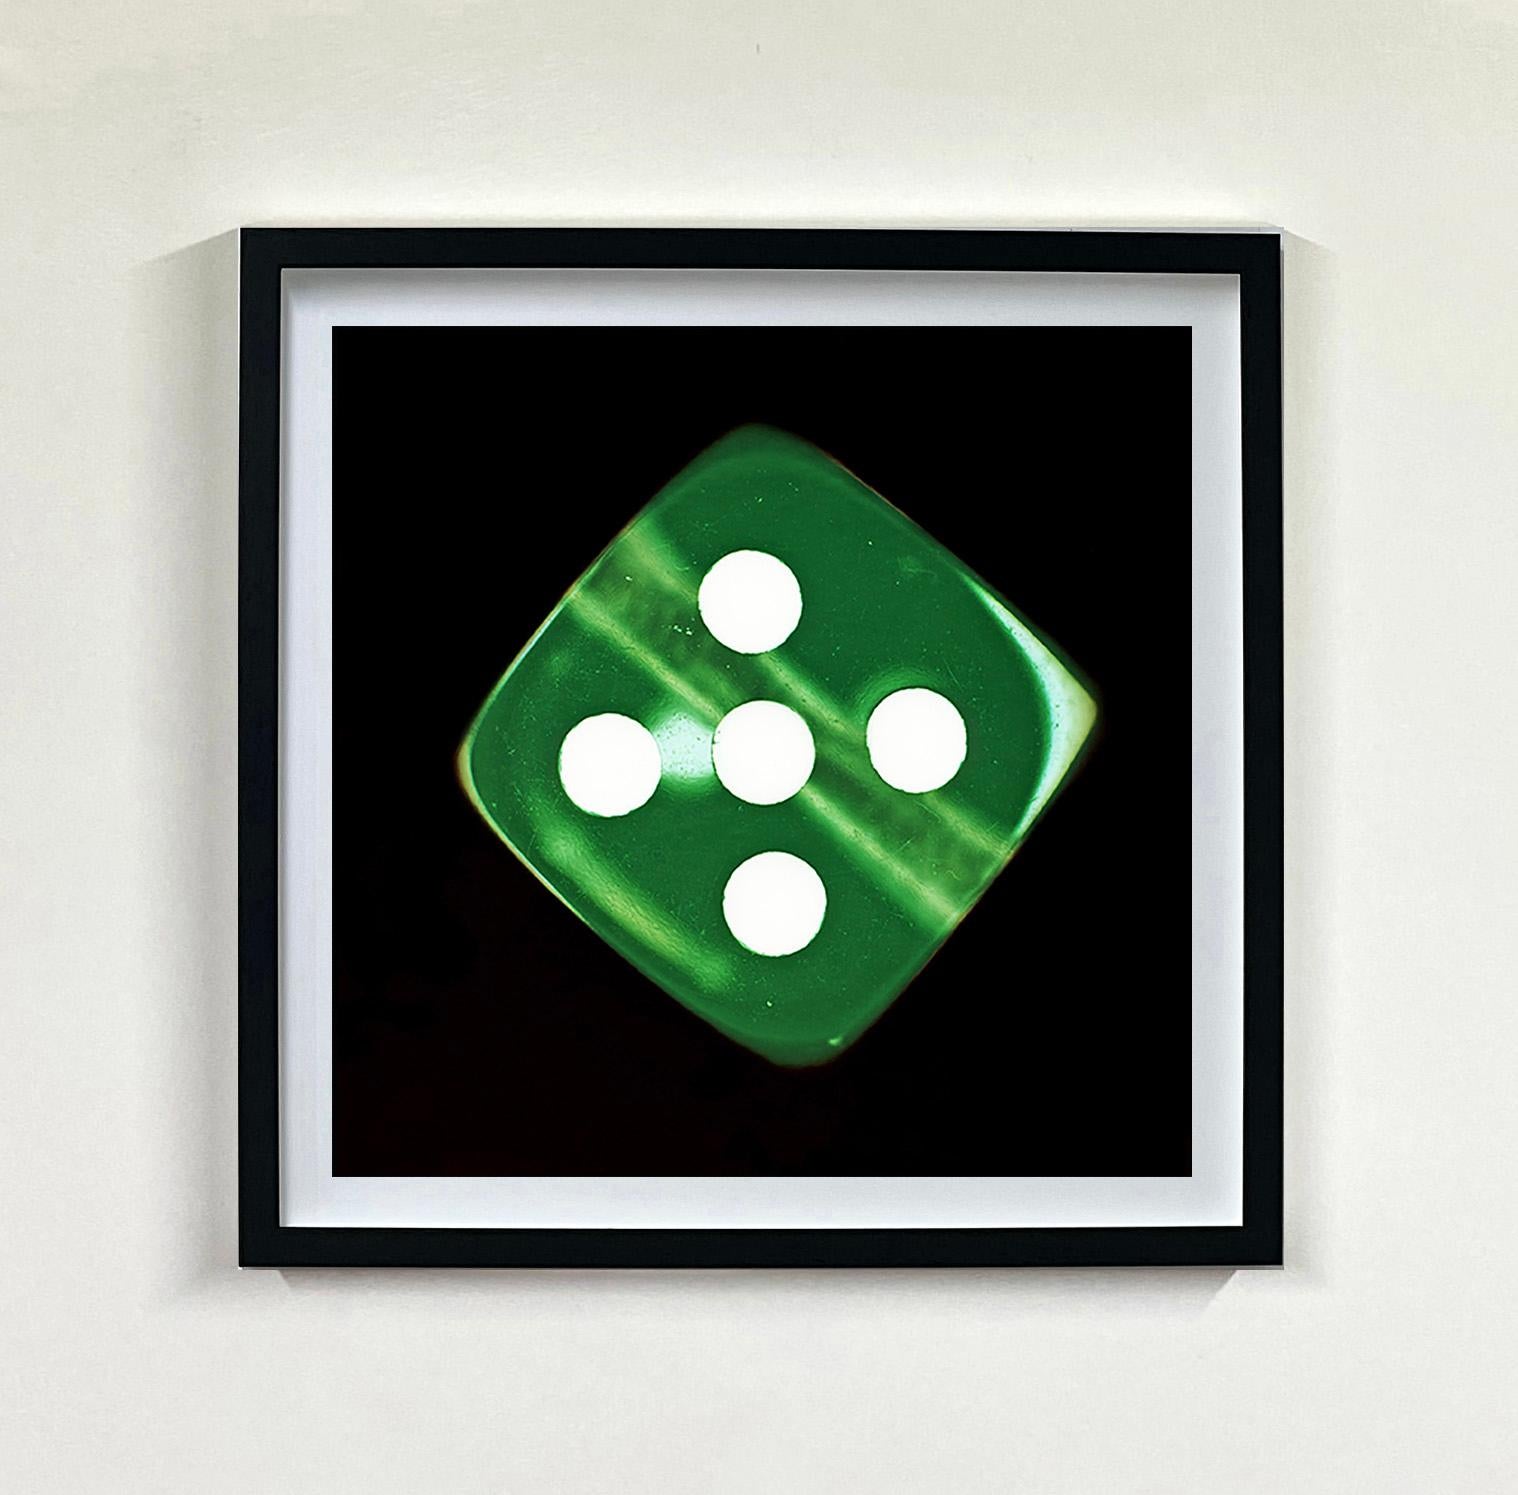 Dice Series Fünf Grüne Pop-Art-Farbfotografie-Serie – Photograph von Heidler & Heeps